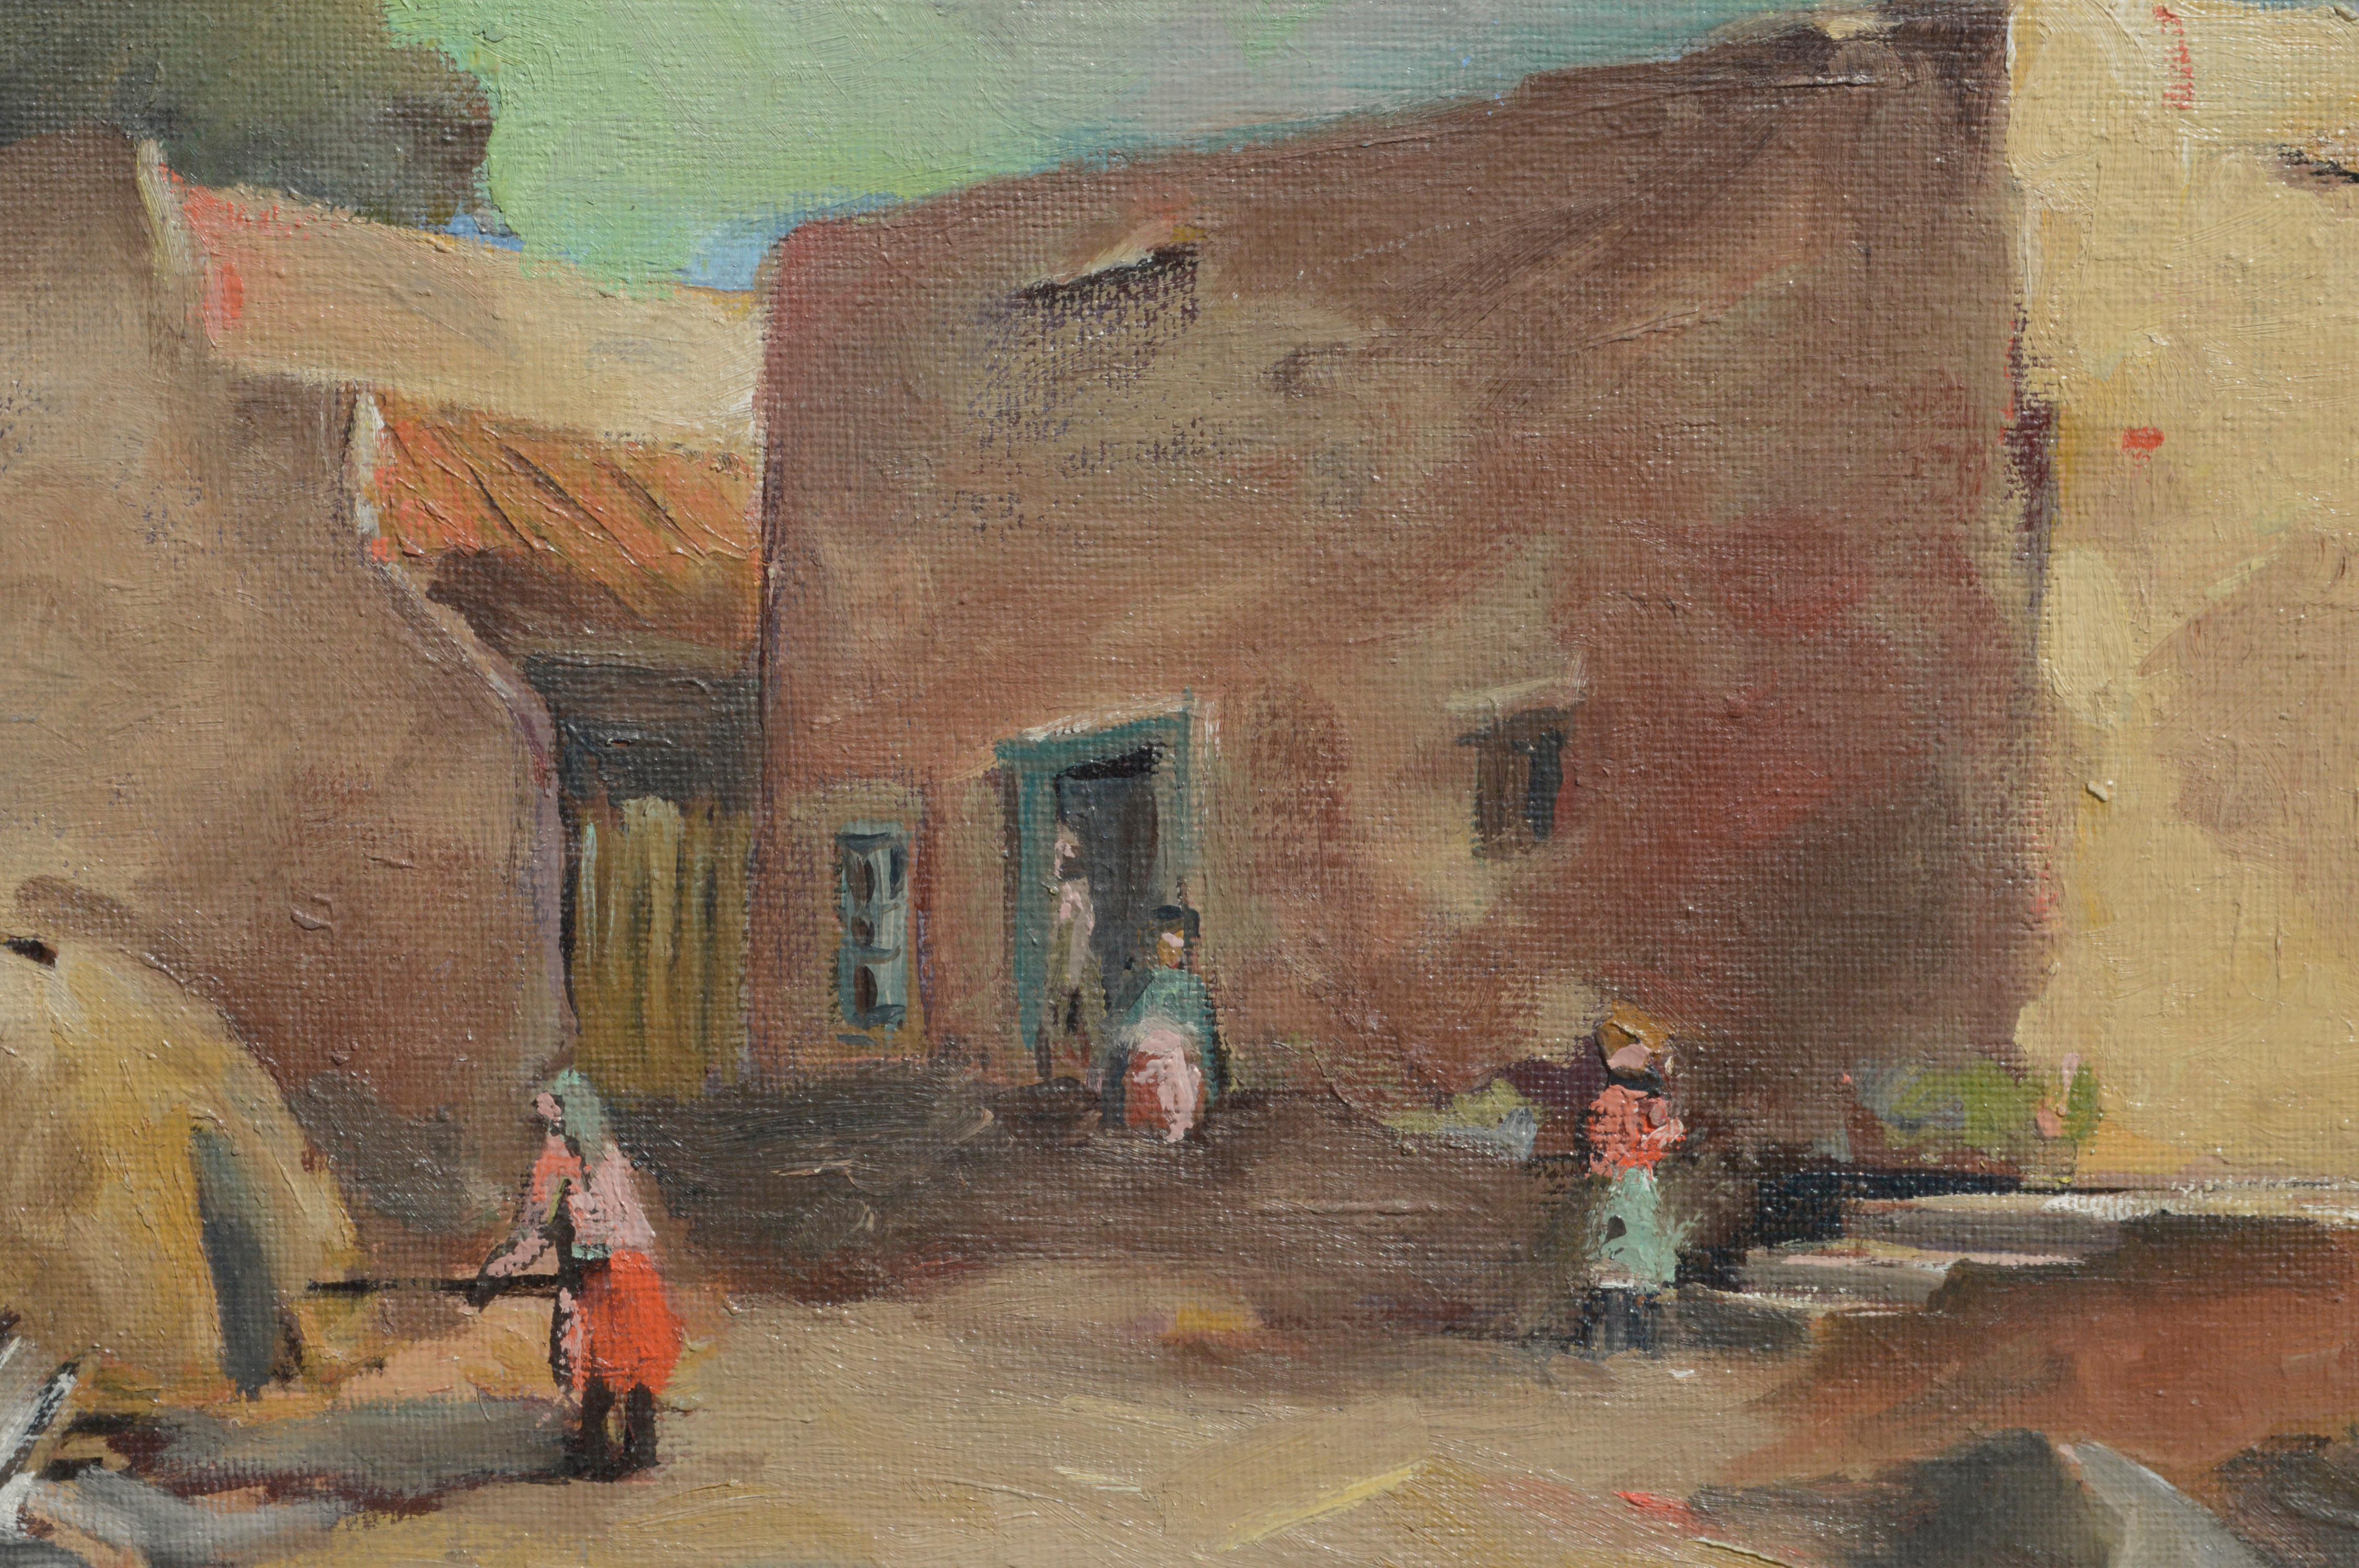 Paysage figuratif du Sud-Ouest des années 1940 - Pueblo Village, Nouveau-Mexique  - Painting de William Frates